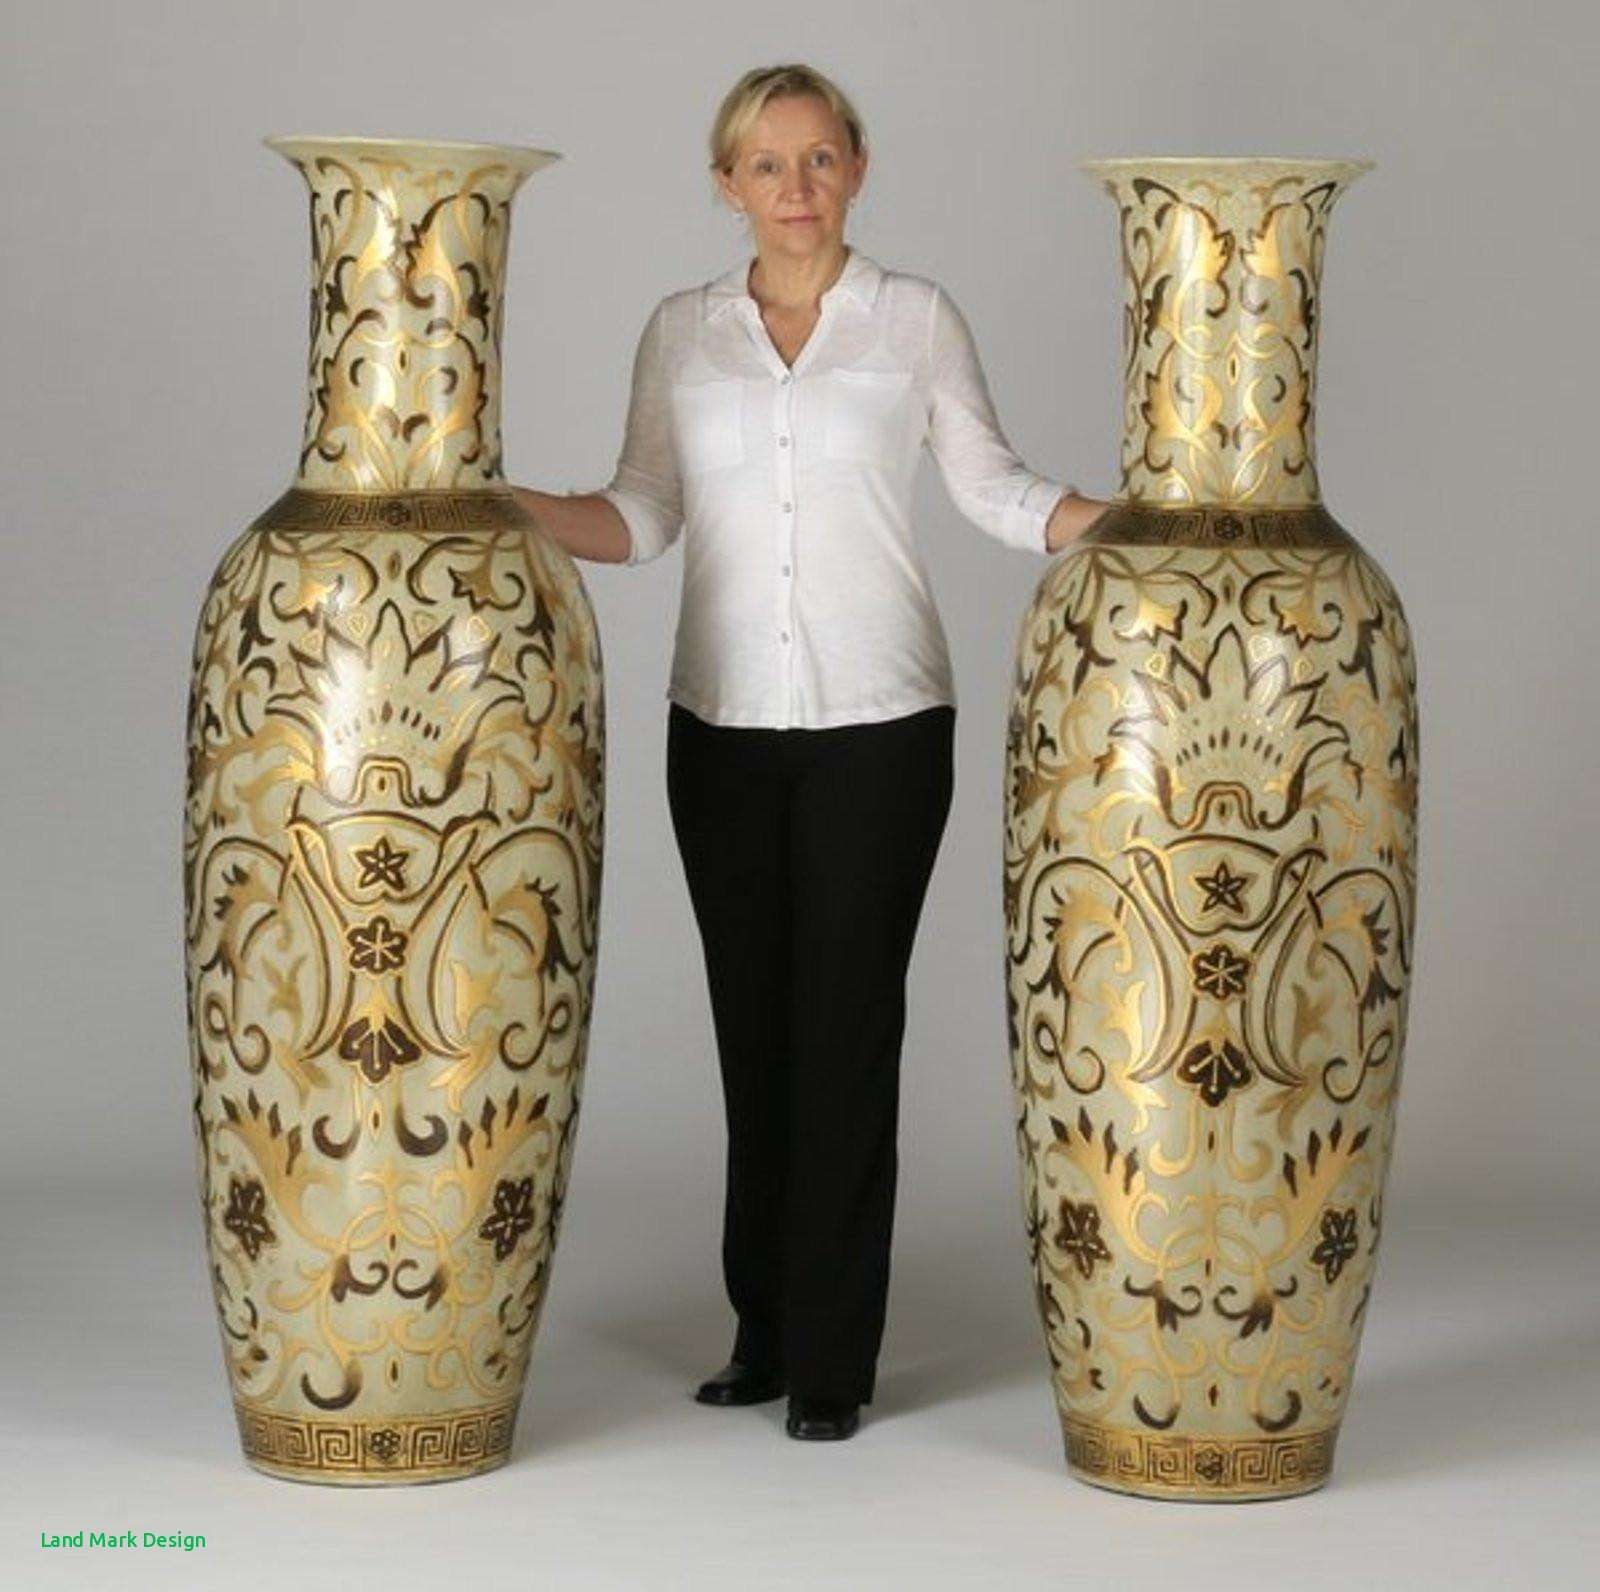 Pottery Barn Wall Vase Glass Of White Pottery Vase Inspirational Oversized Floor Vases the Weekly In White Pottery Vase Inspirational Oversized Floor Vases